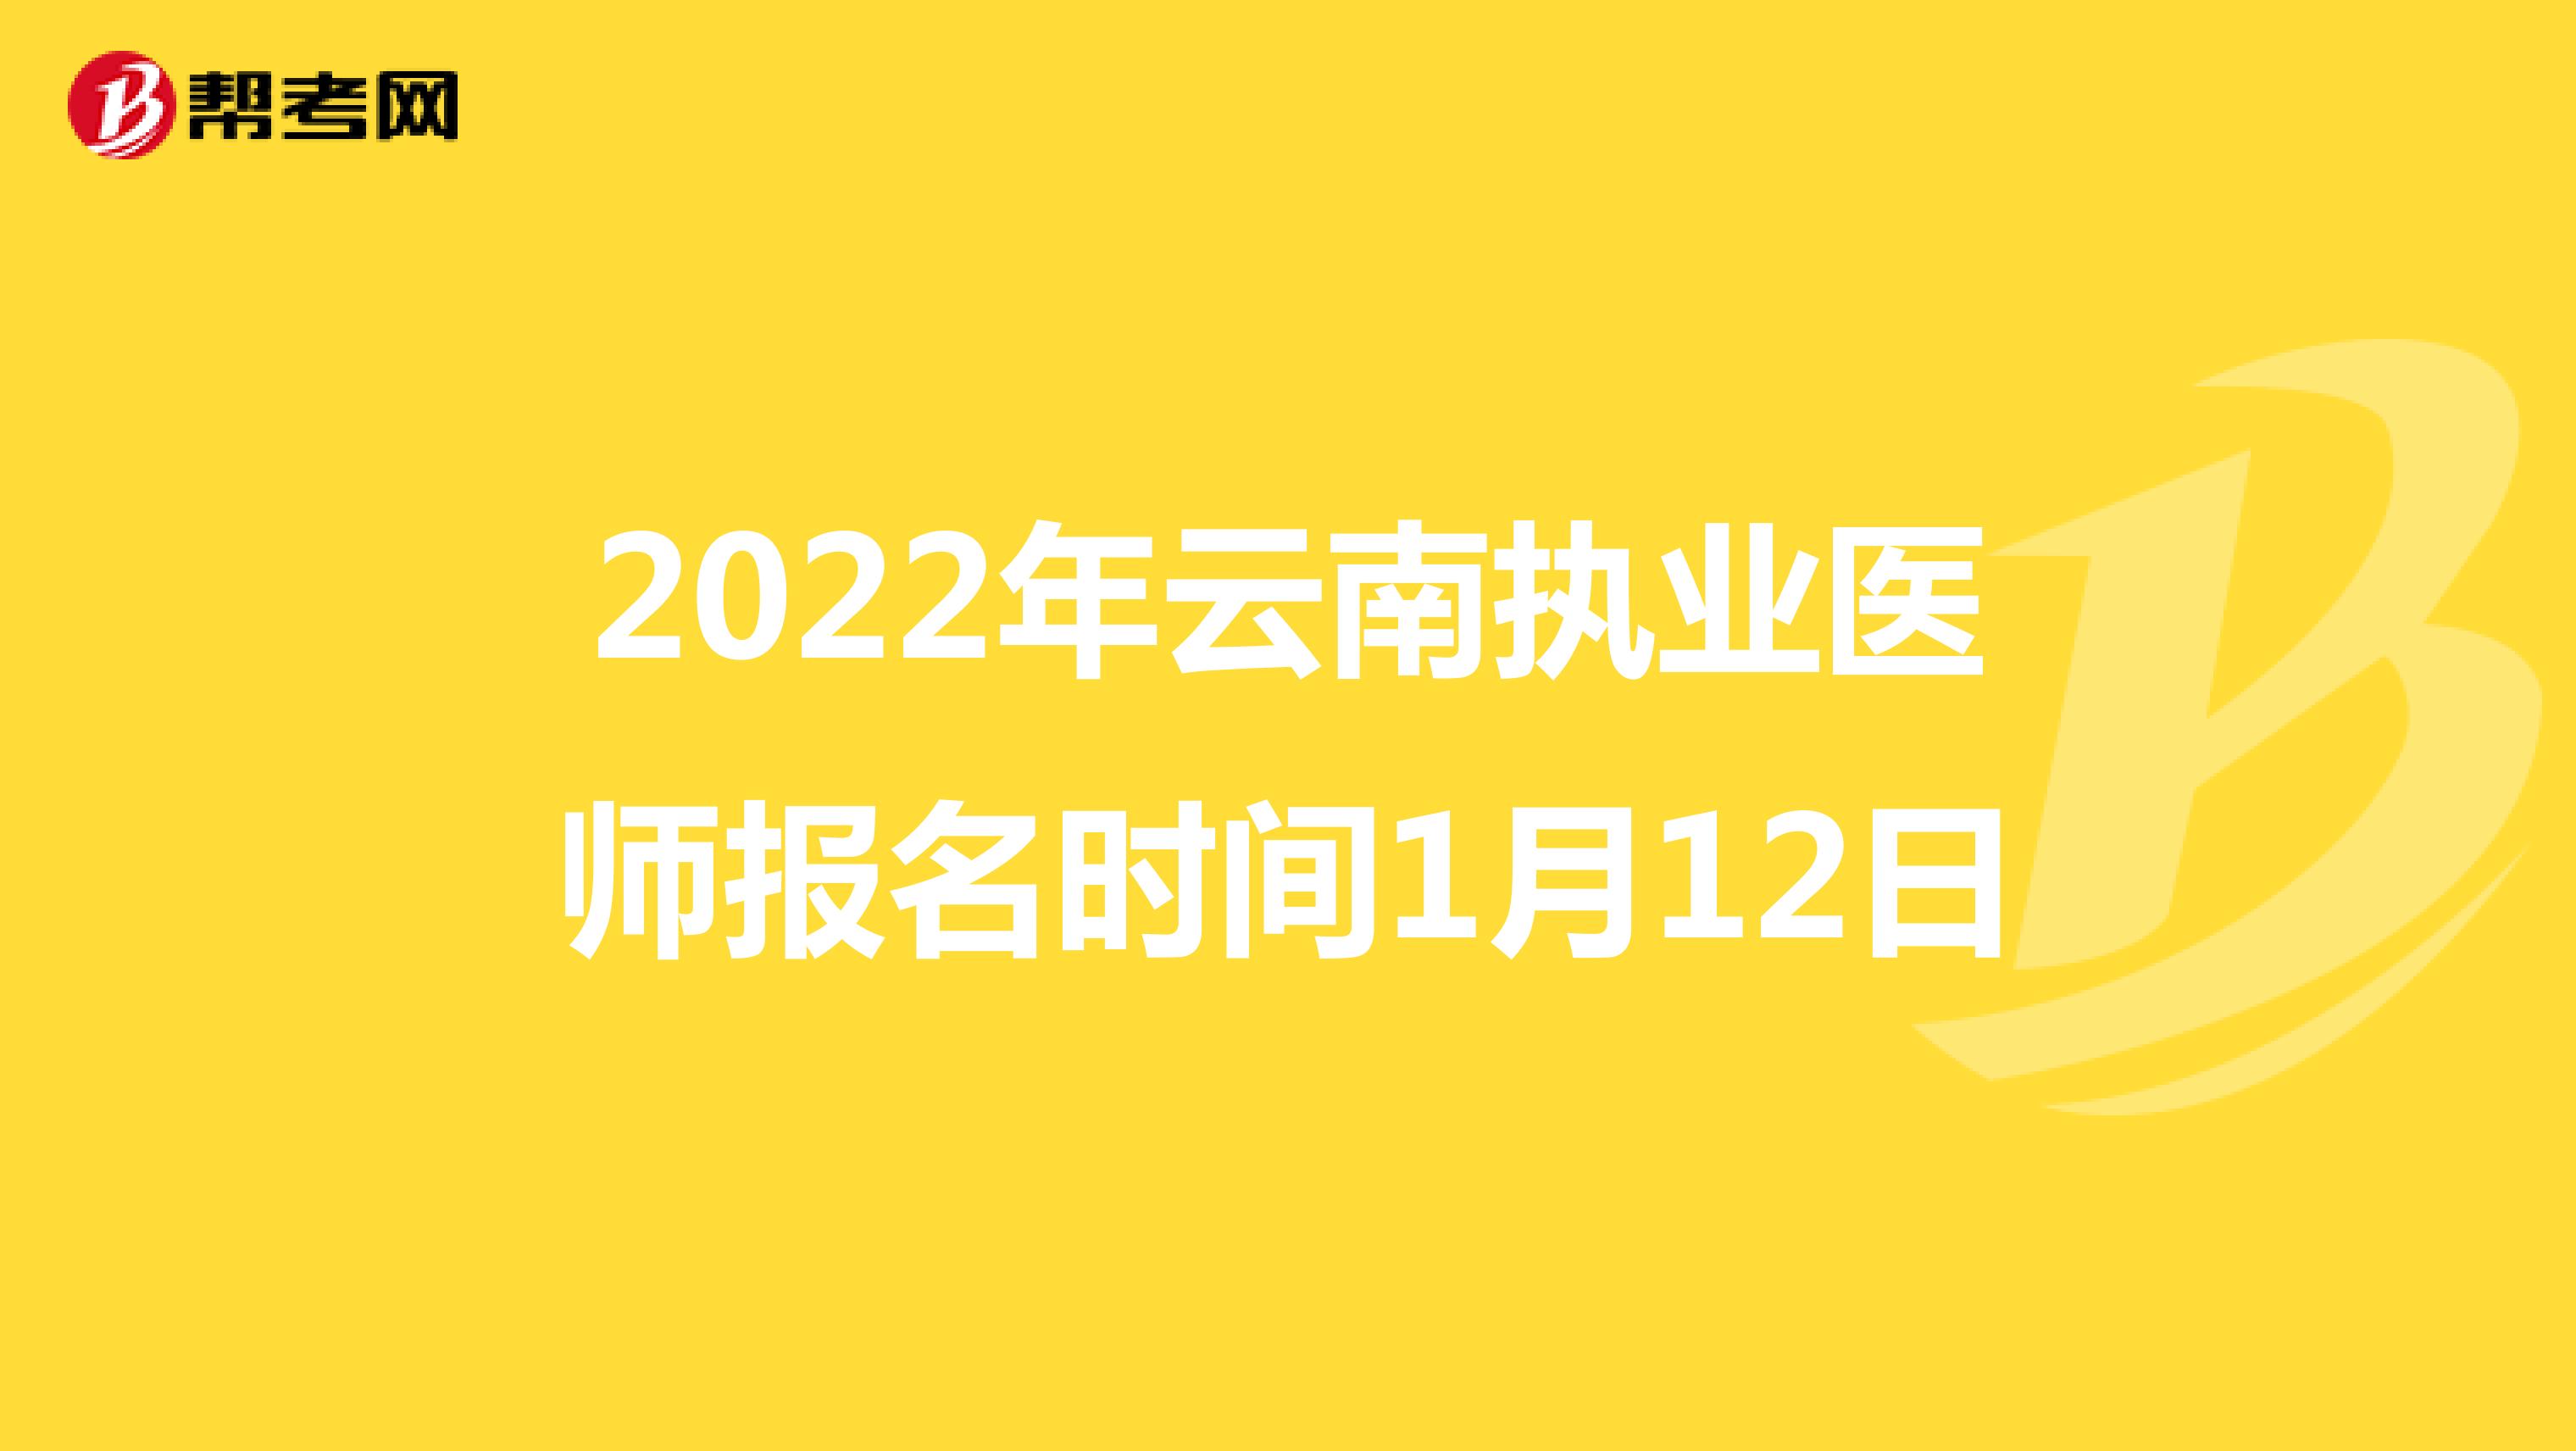 2022年云南执业医师报名时间1月12日